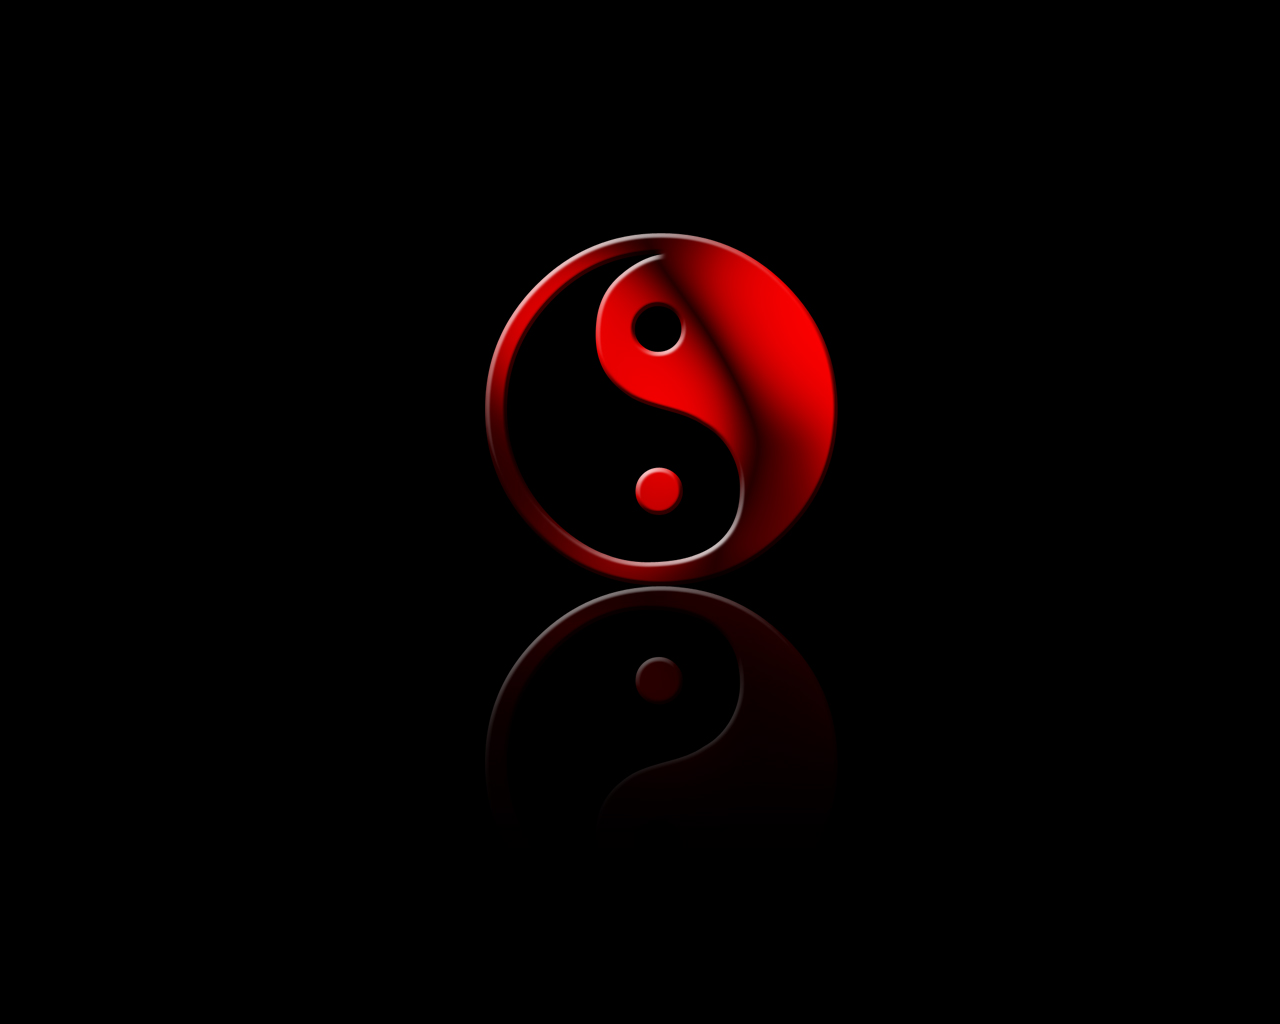 Yin and Yang by urbanbushido on